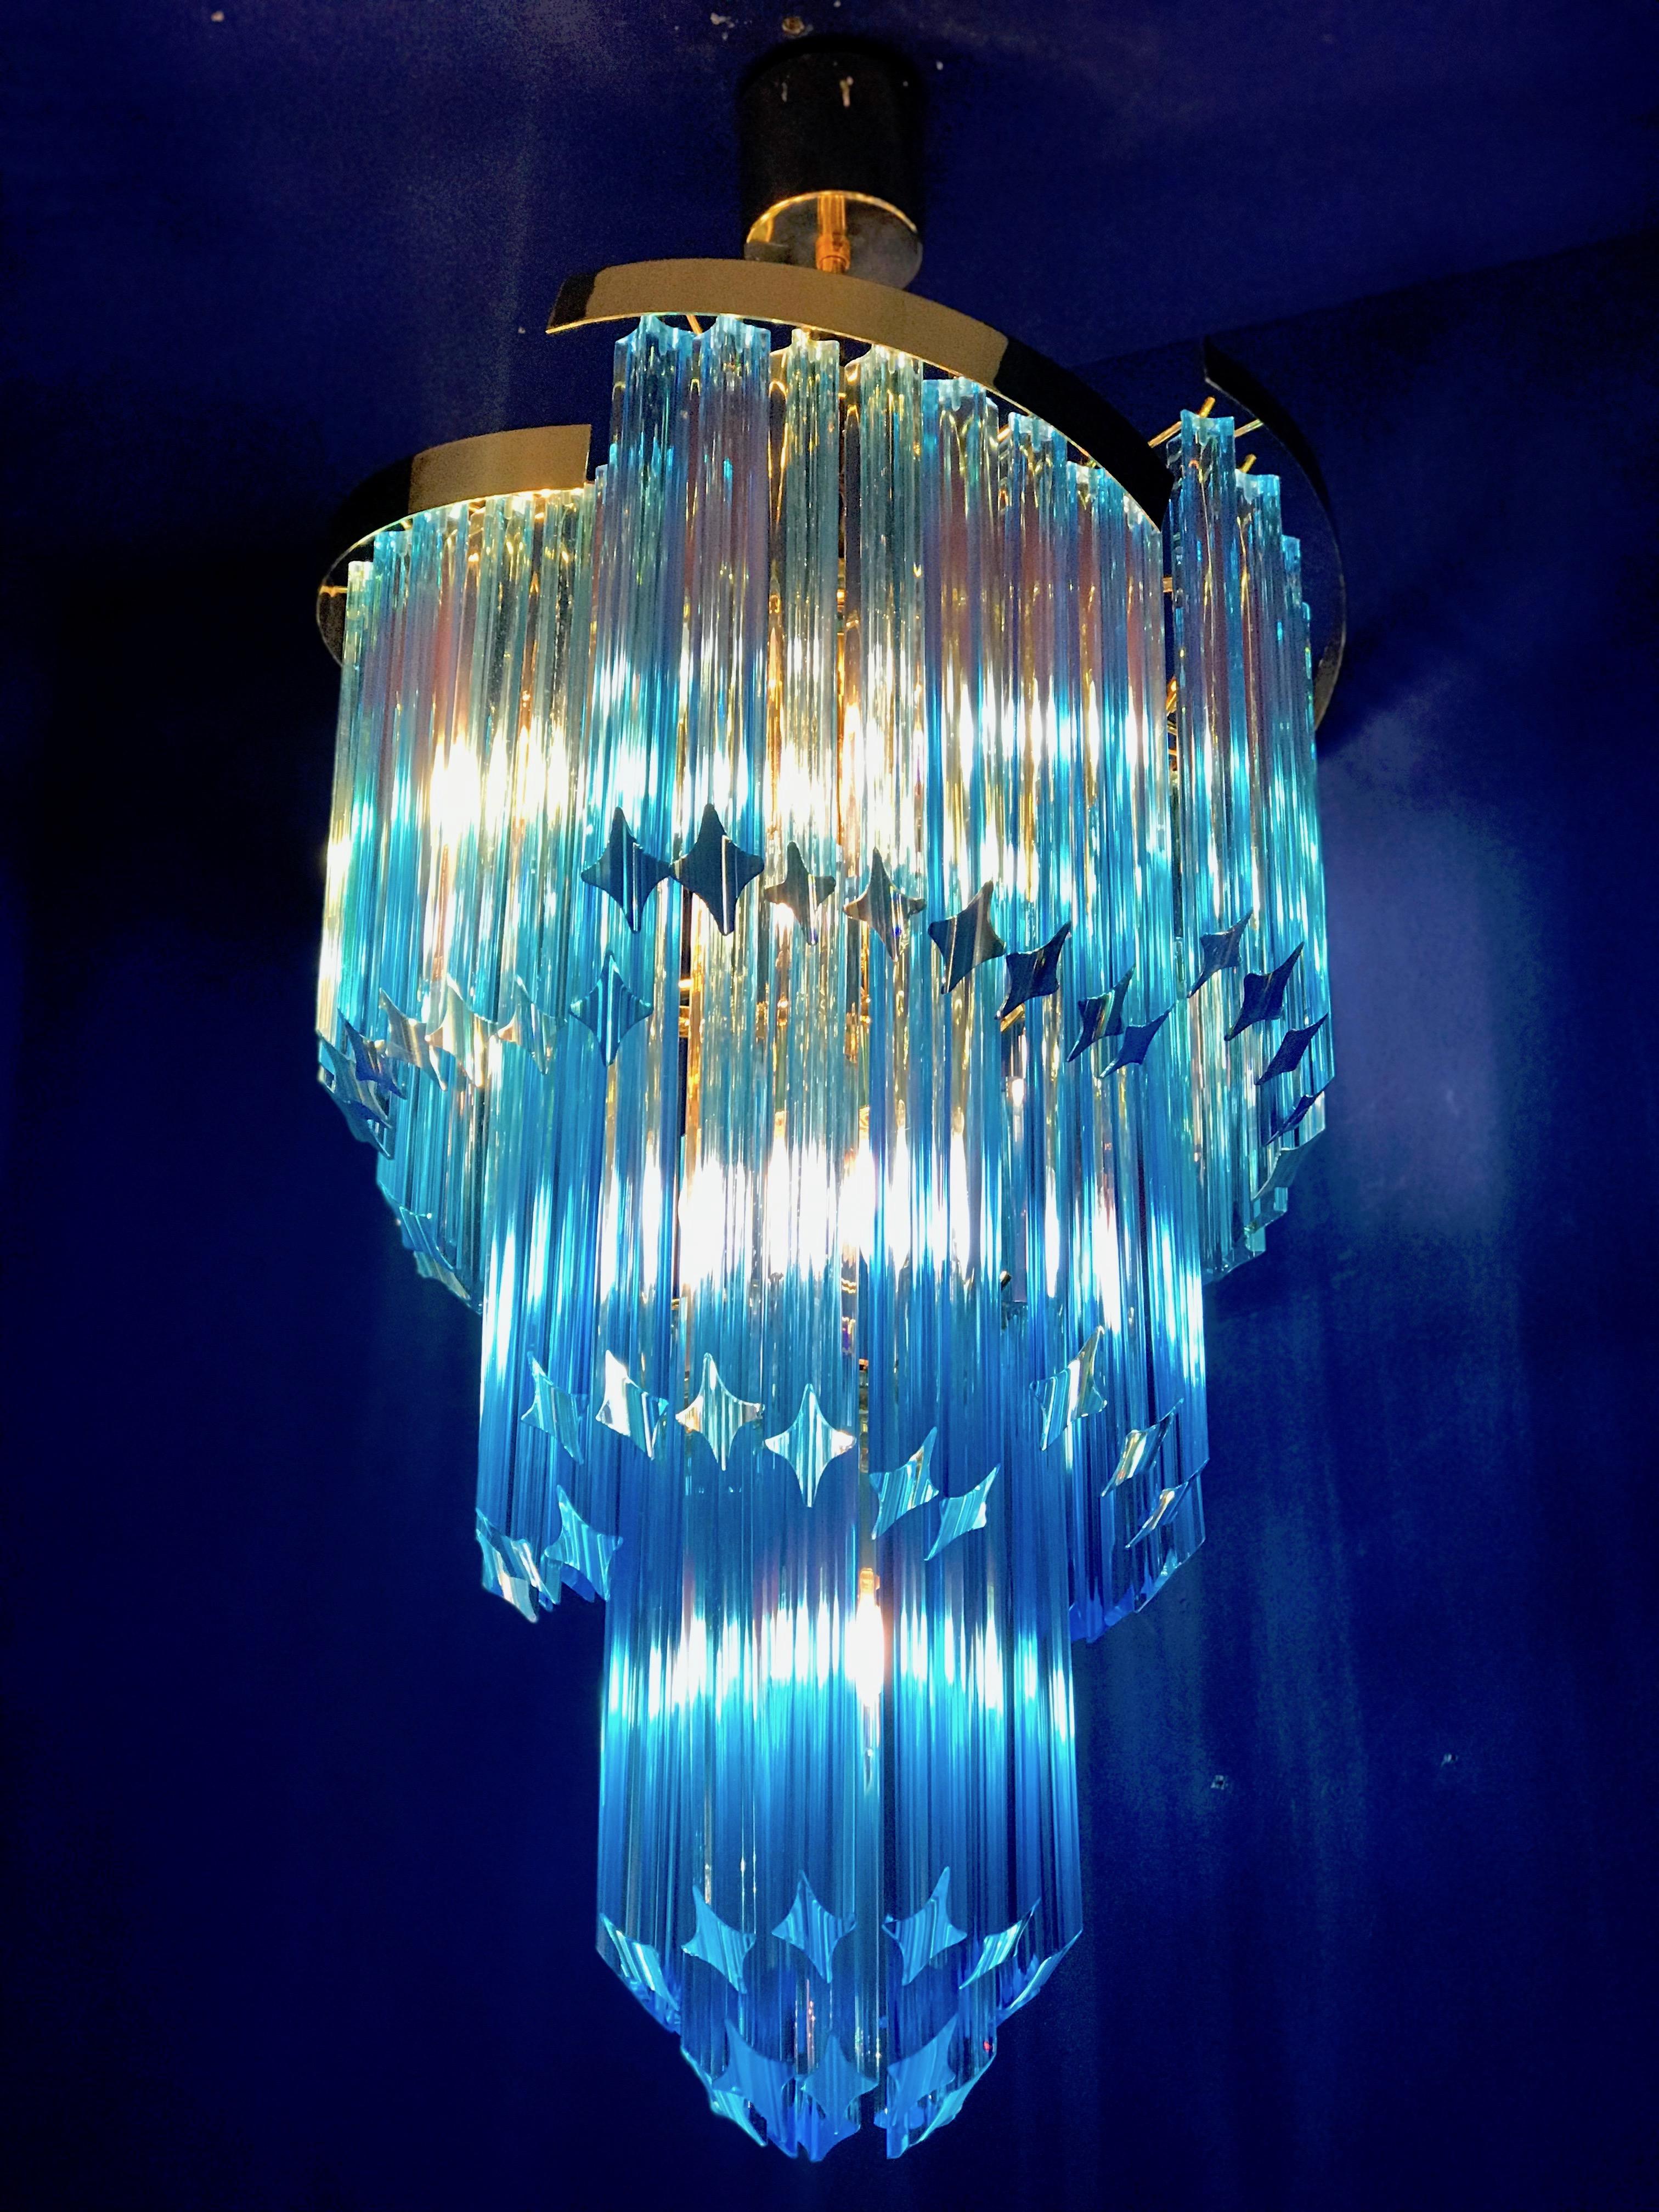 Blauer himmlischer Murano-Kronleuchter aus Quadriedri-Kristallprisma mit goldenem Metallrahmen.
Zeitraum: 1980s
E 14 Lampenfassungen, die für das amerikanische Stromnetz geeignet sind.
Perfekter Zustand und voll funktionsfähig.
Zwei Paare